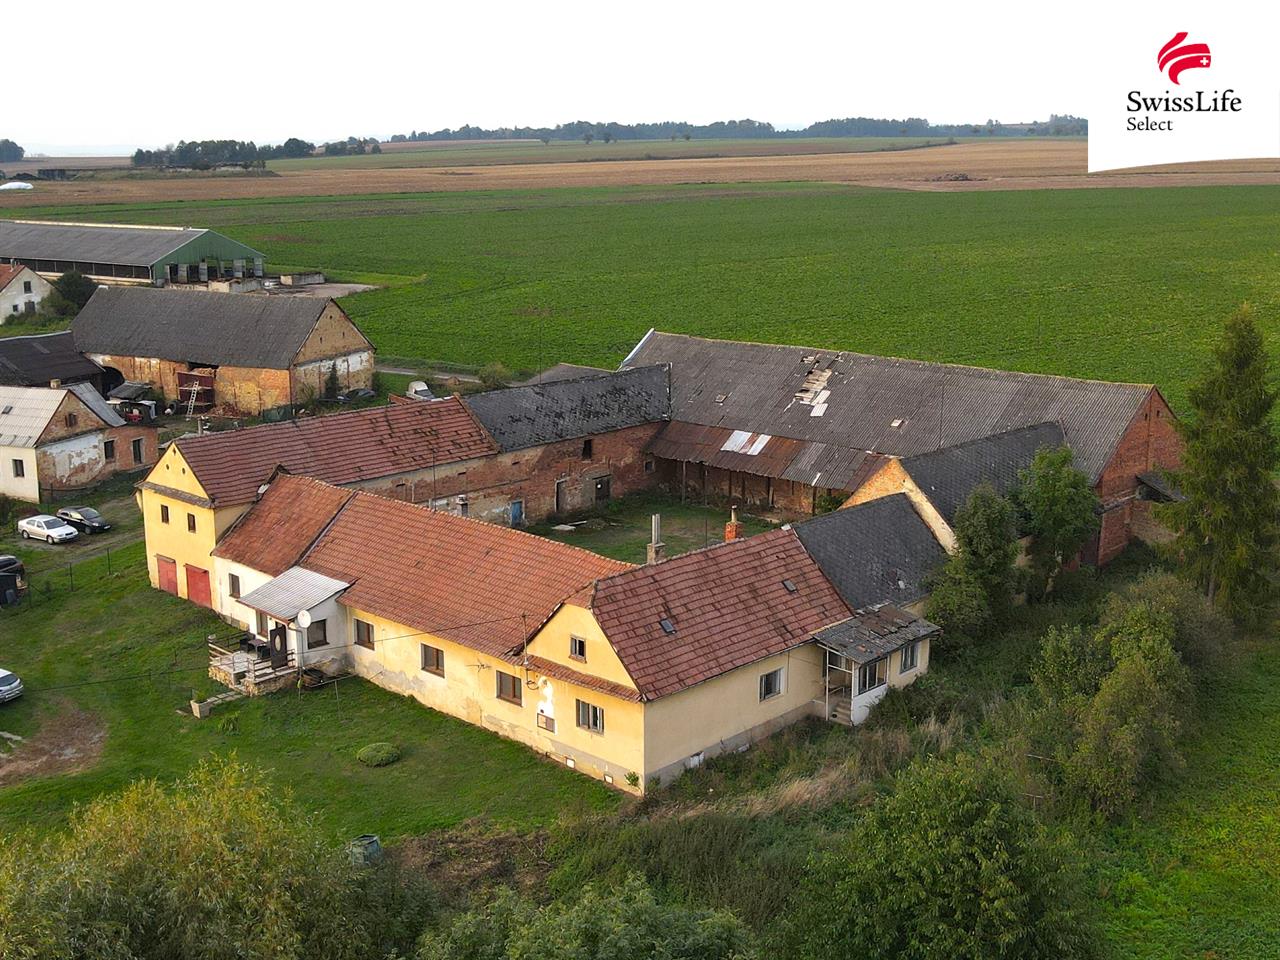 Prodej zemědělské usedlosti 135 m2, Dětřichov u Moravské Třebové